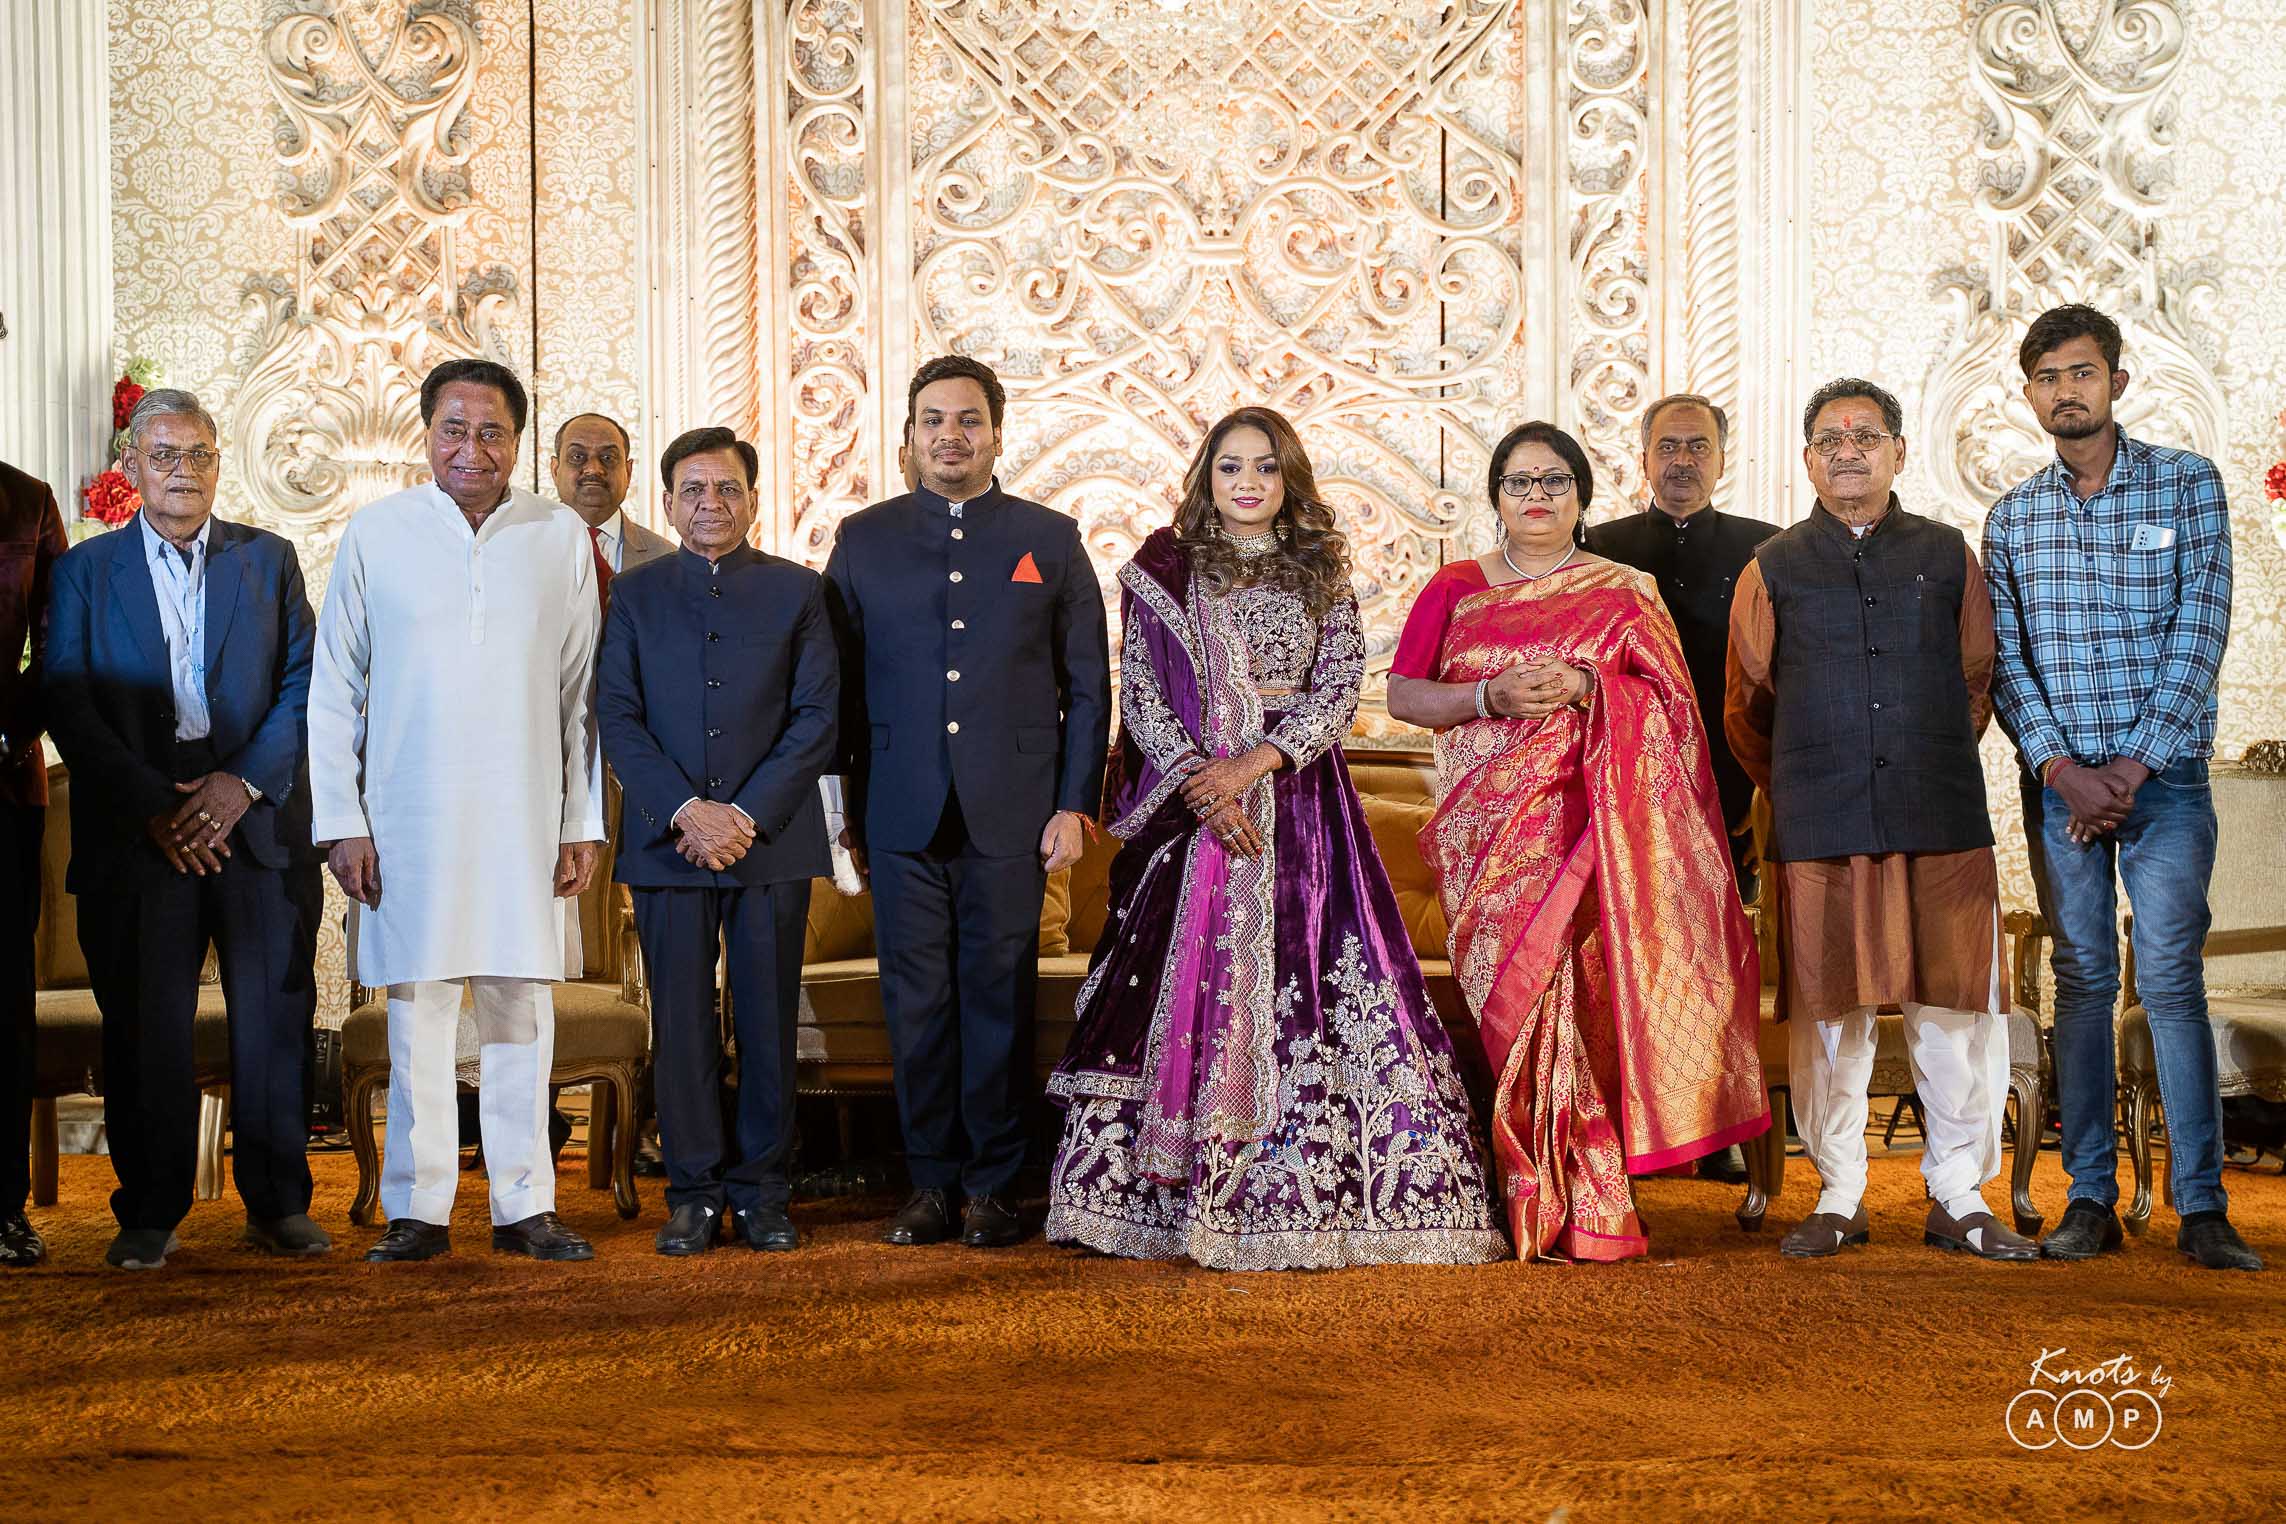 Grand-Wedding-at-Noor-Sabah-Palace-Bhopal-92-of-96